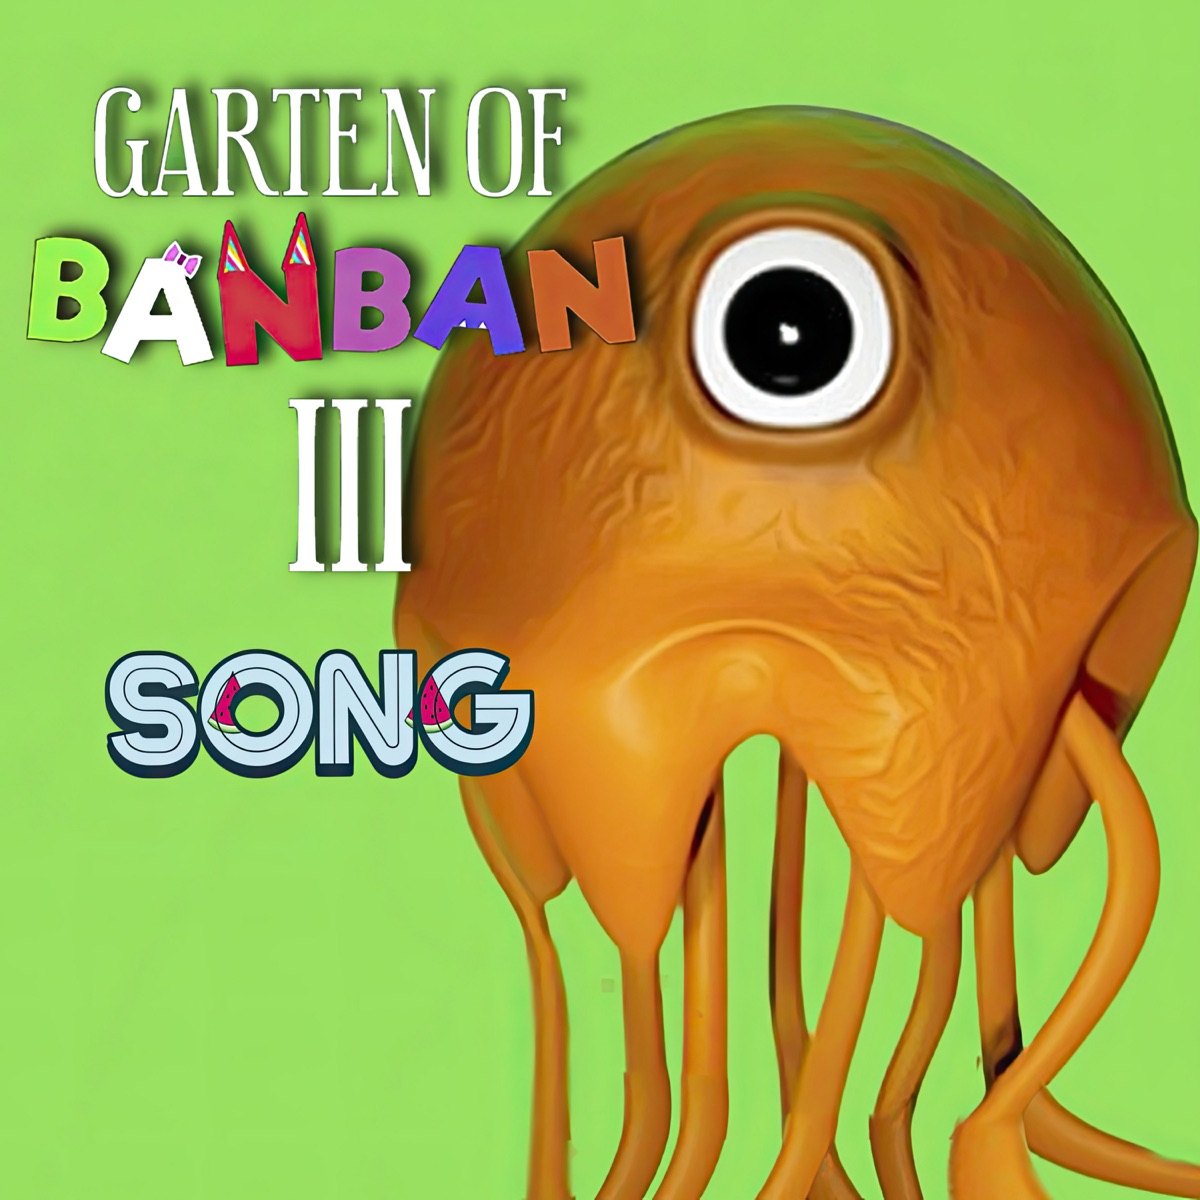 EVIL BANBAN FROM GARTEN OF BANBAN 3 NEW MONSTERS | FAN ART | BGGT